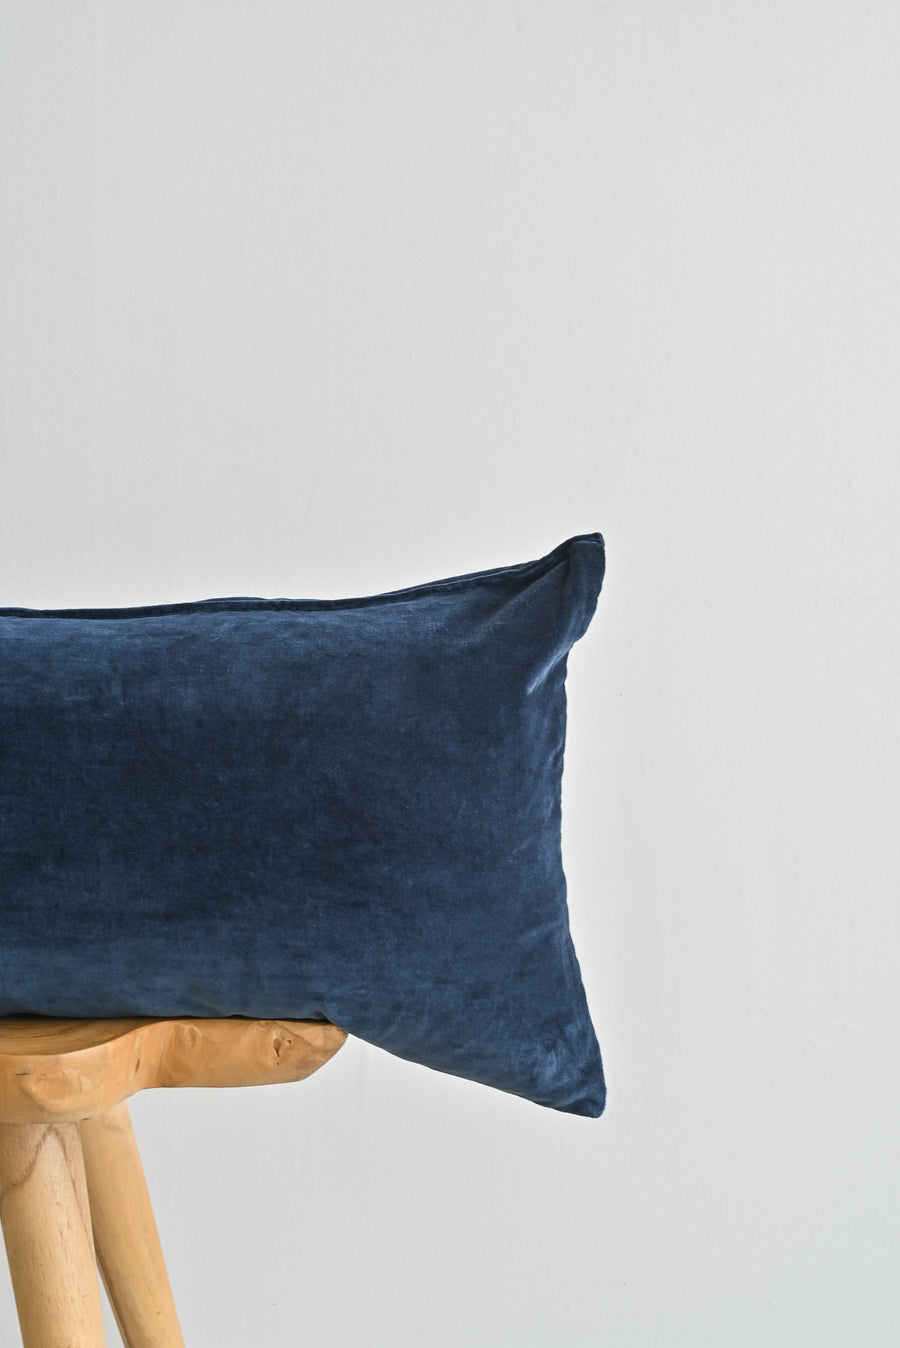 show_cushions_lumbar_14_36_navy_blue_velvet_pillow